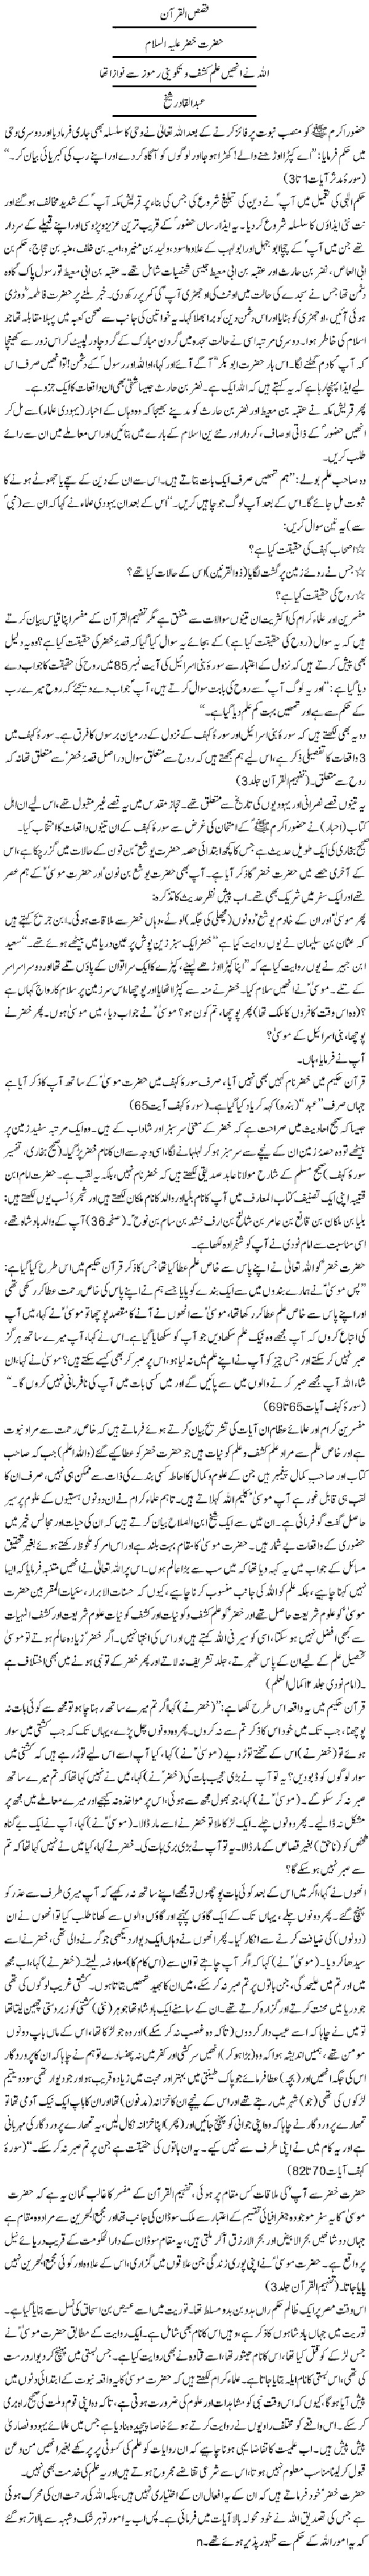 Qissa Hazrat Khizar a.s in Urdu by Abdul Qadir Sheikh